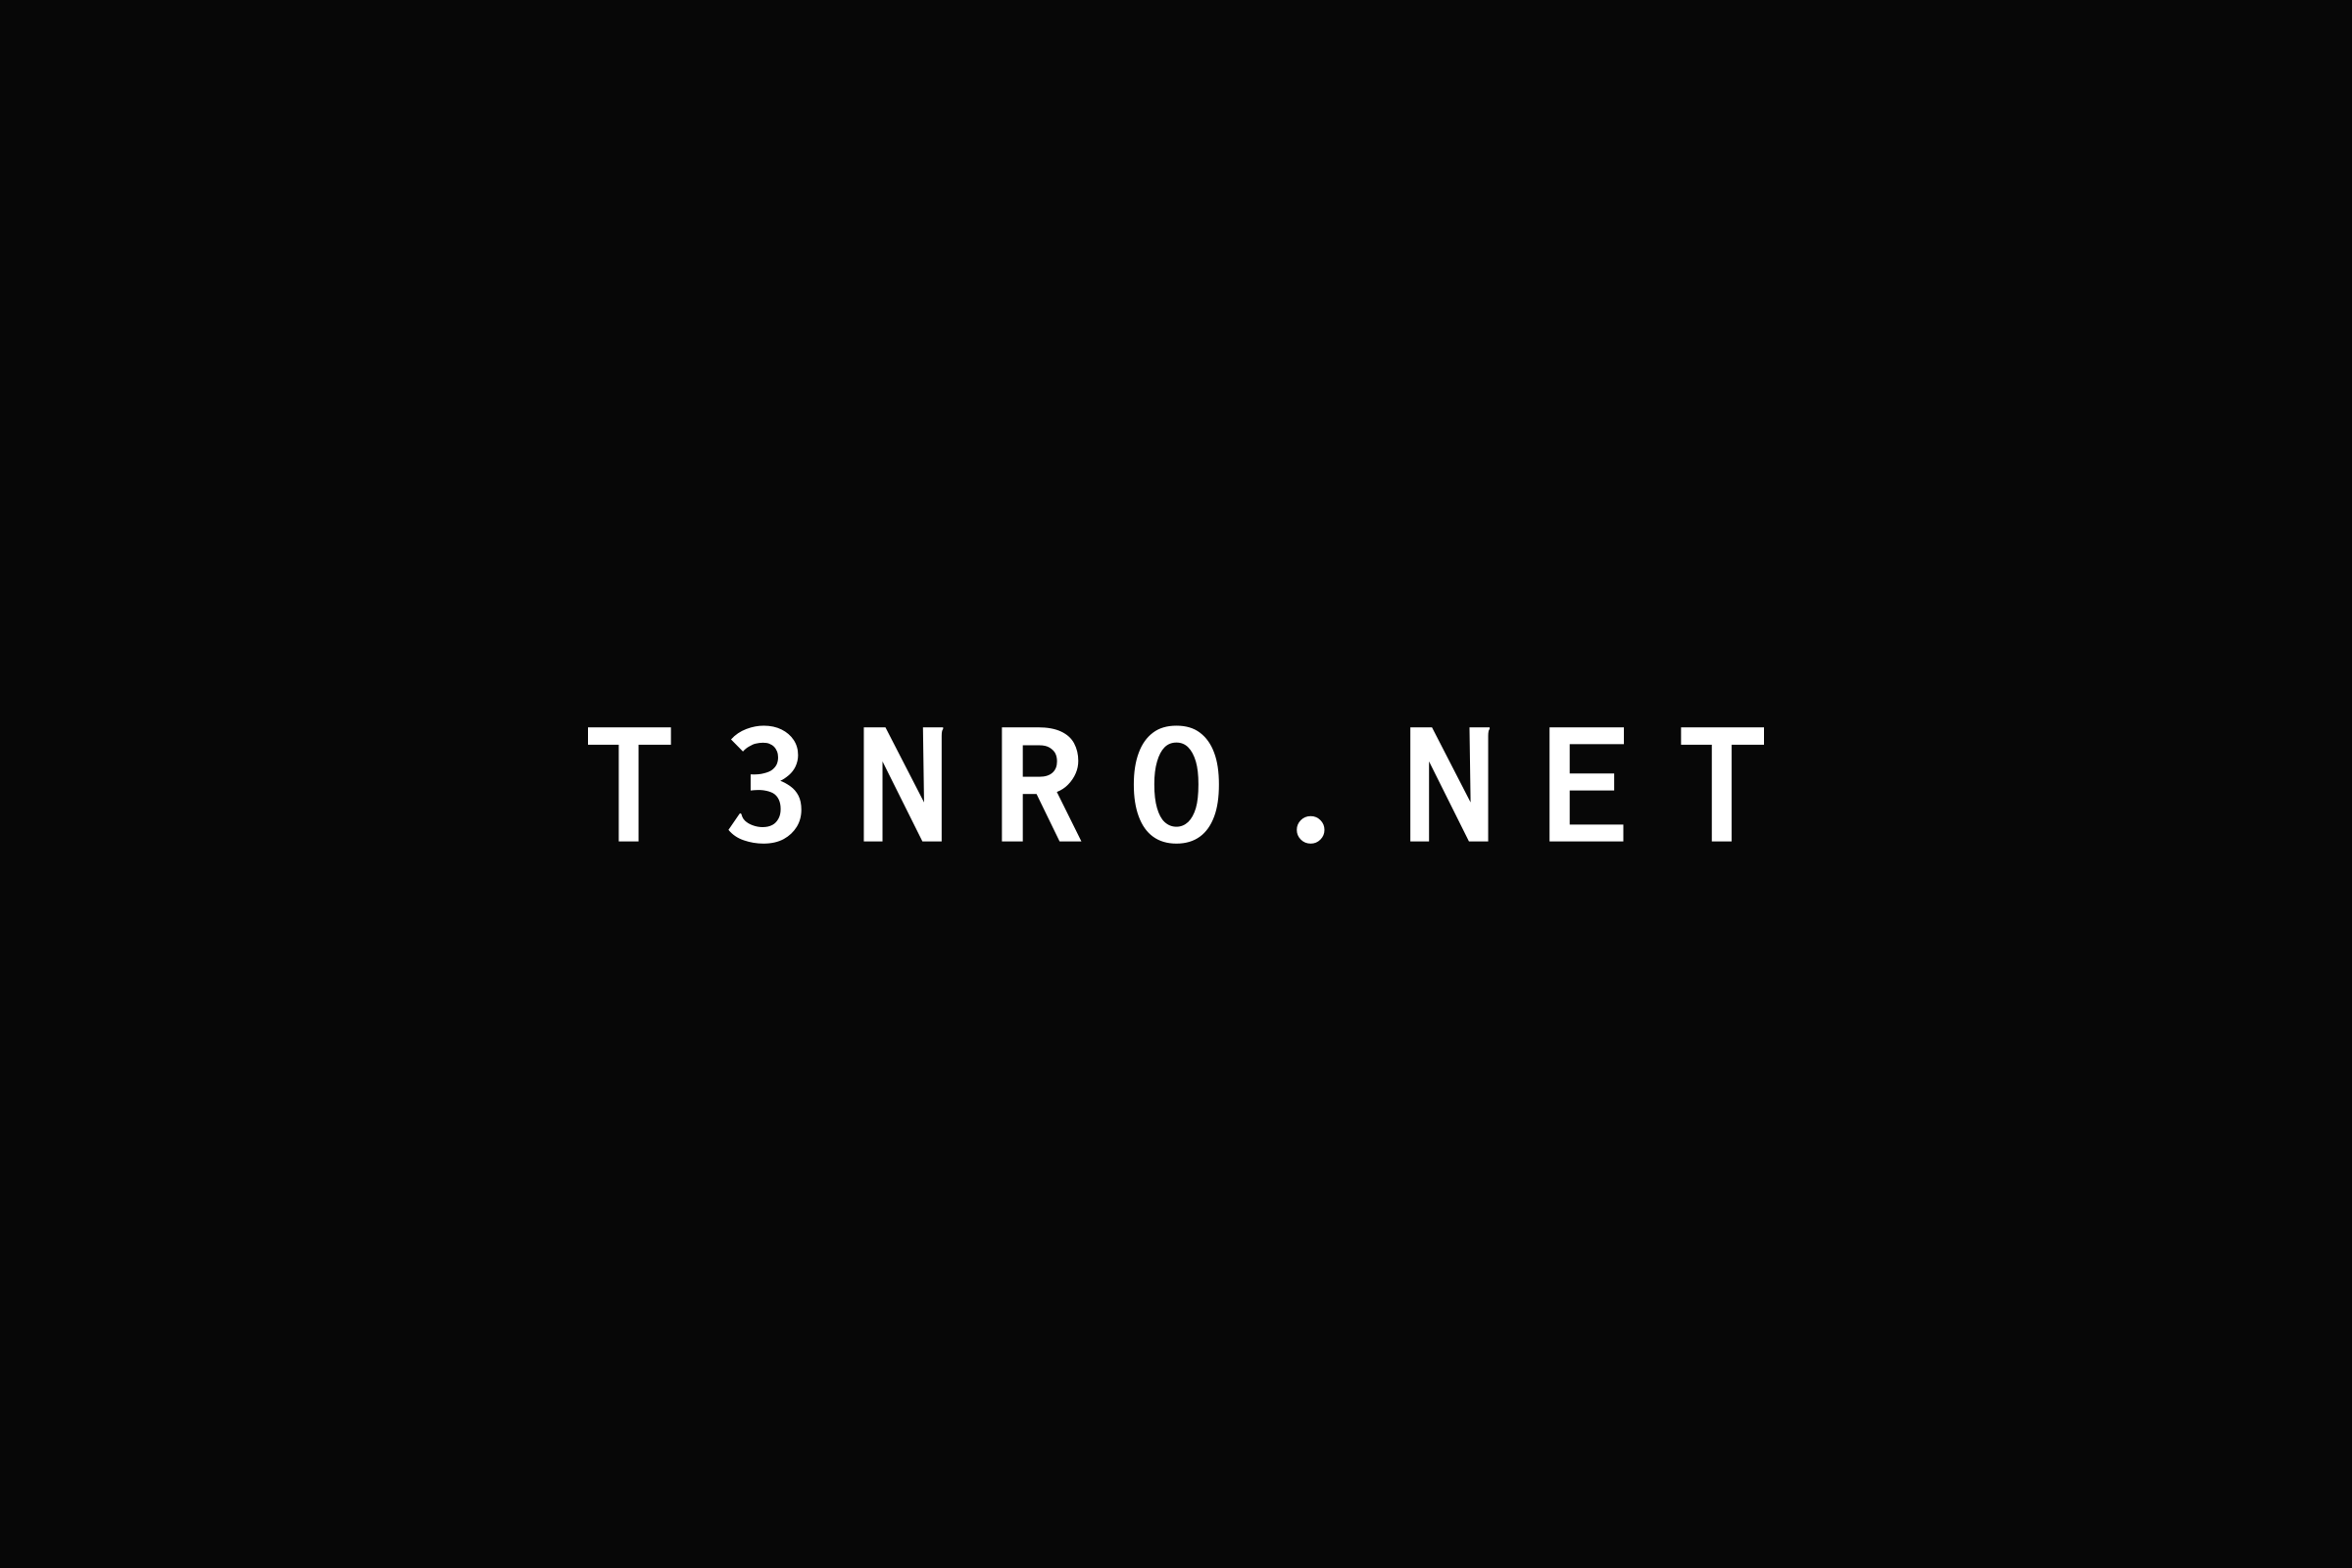 t3nro.net